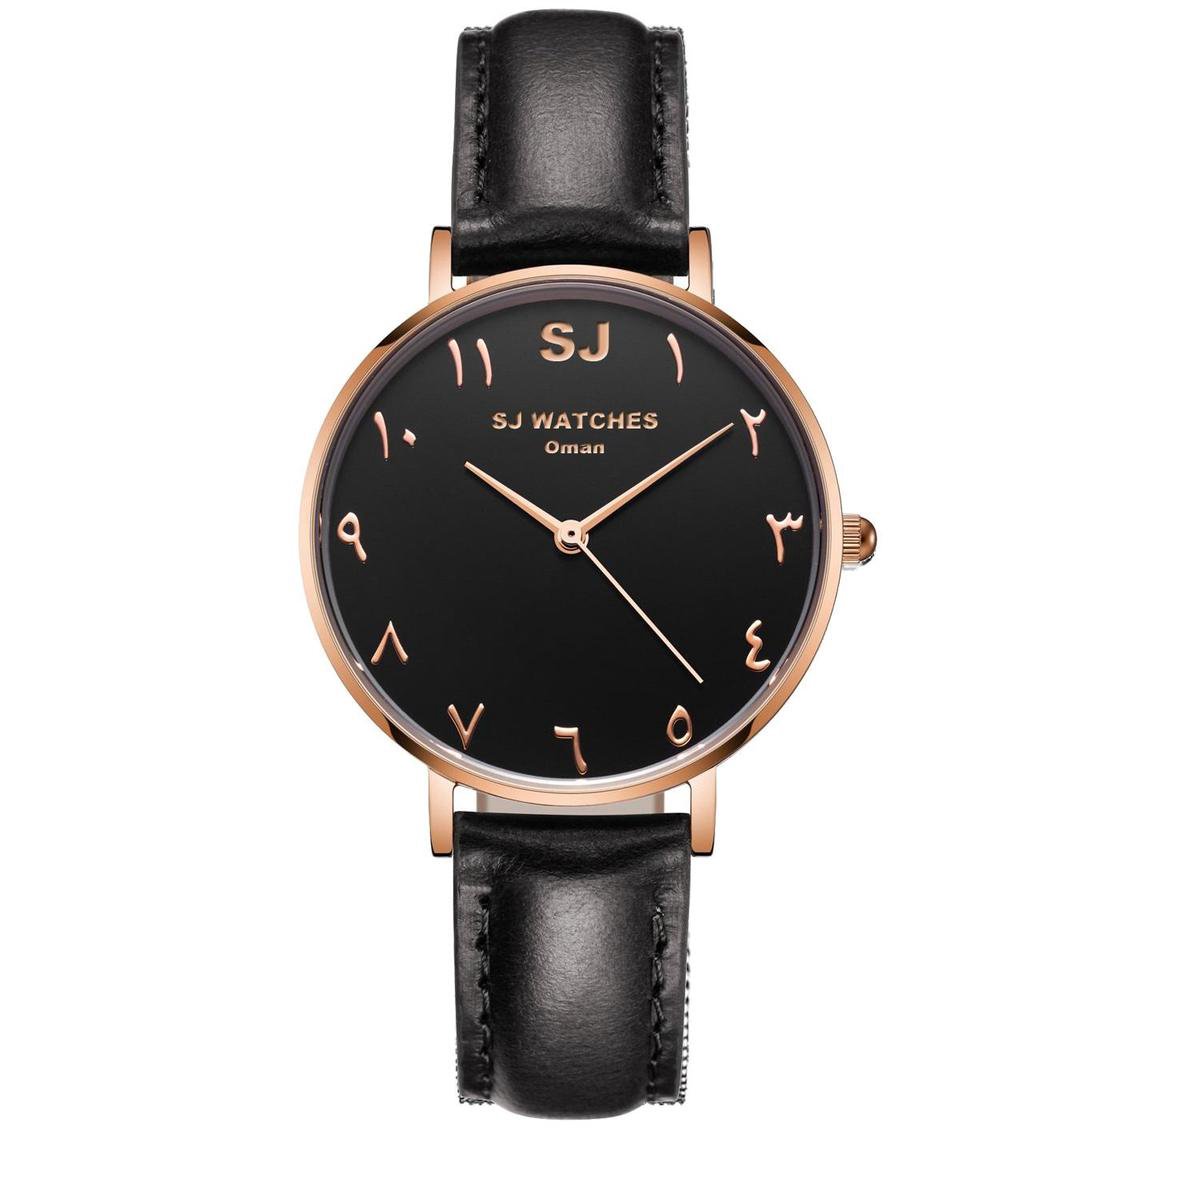 SJ WATCHES Oman horloge dames zwart en rose goud en Arabische cijfers - horloges voor vrouwen 36mm